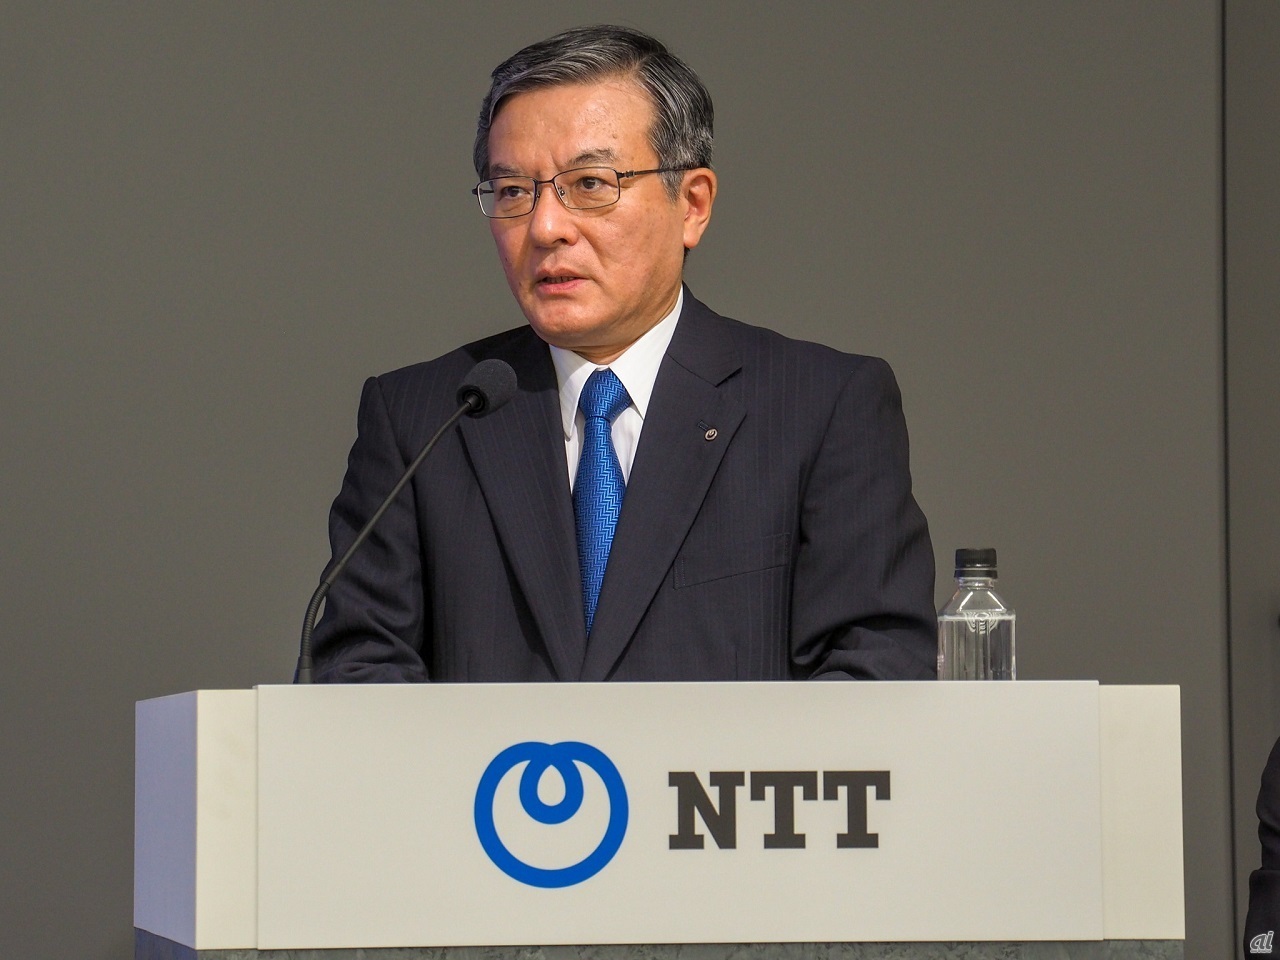 決算説明会に登壇するNTT 代表取締役社長 島田明氏